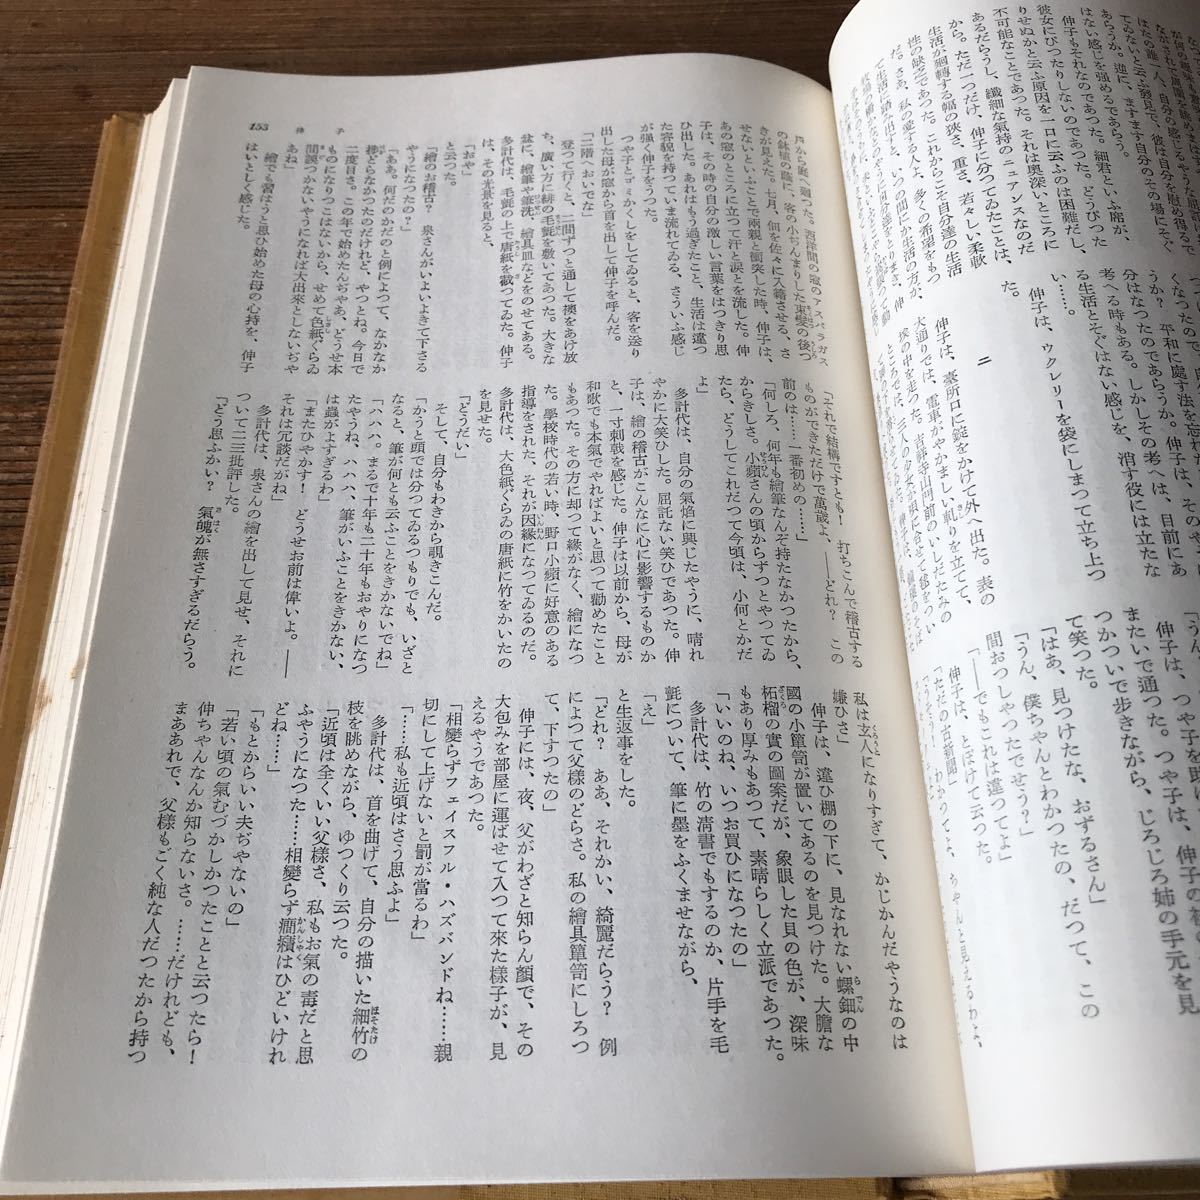  настоящее время день текст . полное собрание сочинений 35 Miyamoto Yuriko сборник .. книжный магазин Showa 29 год выпуск 